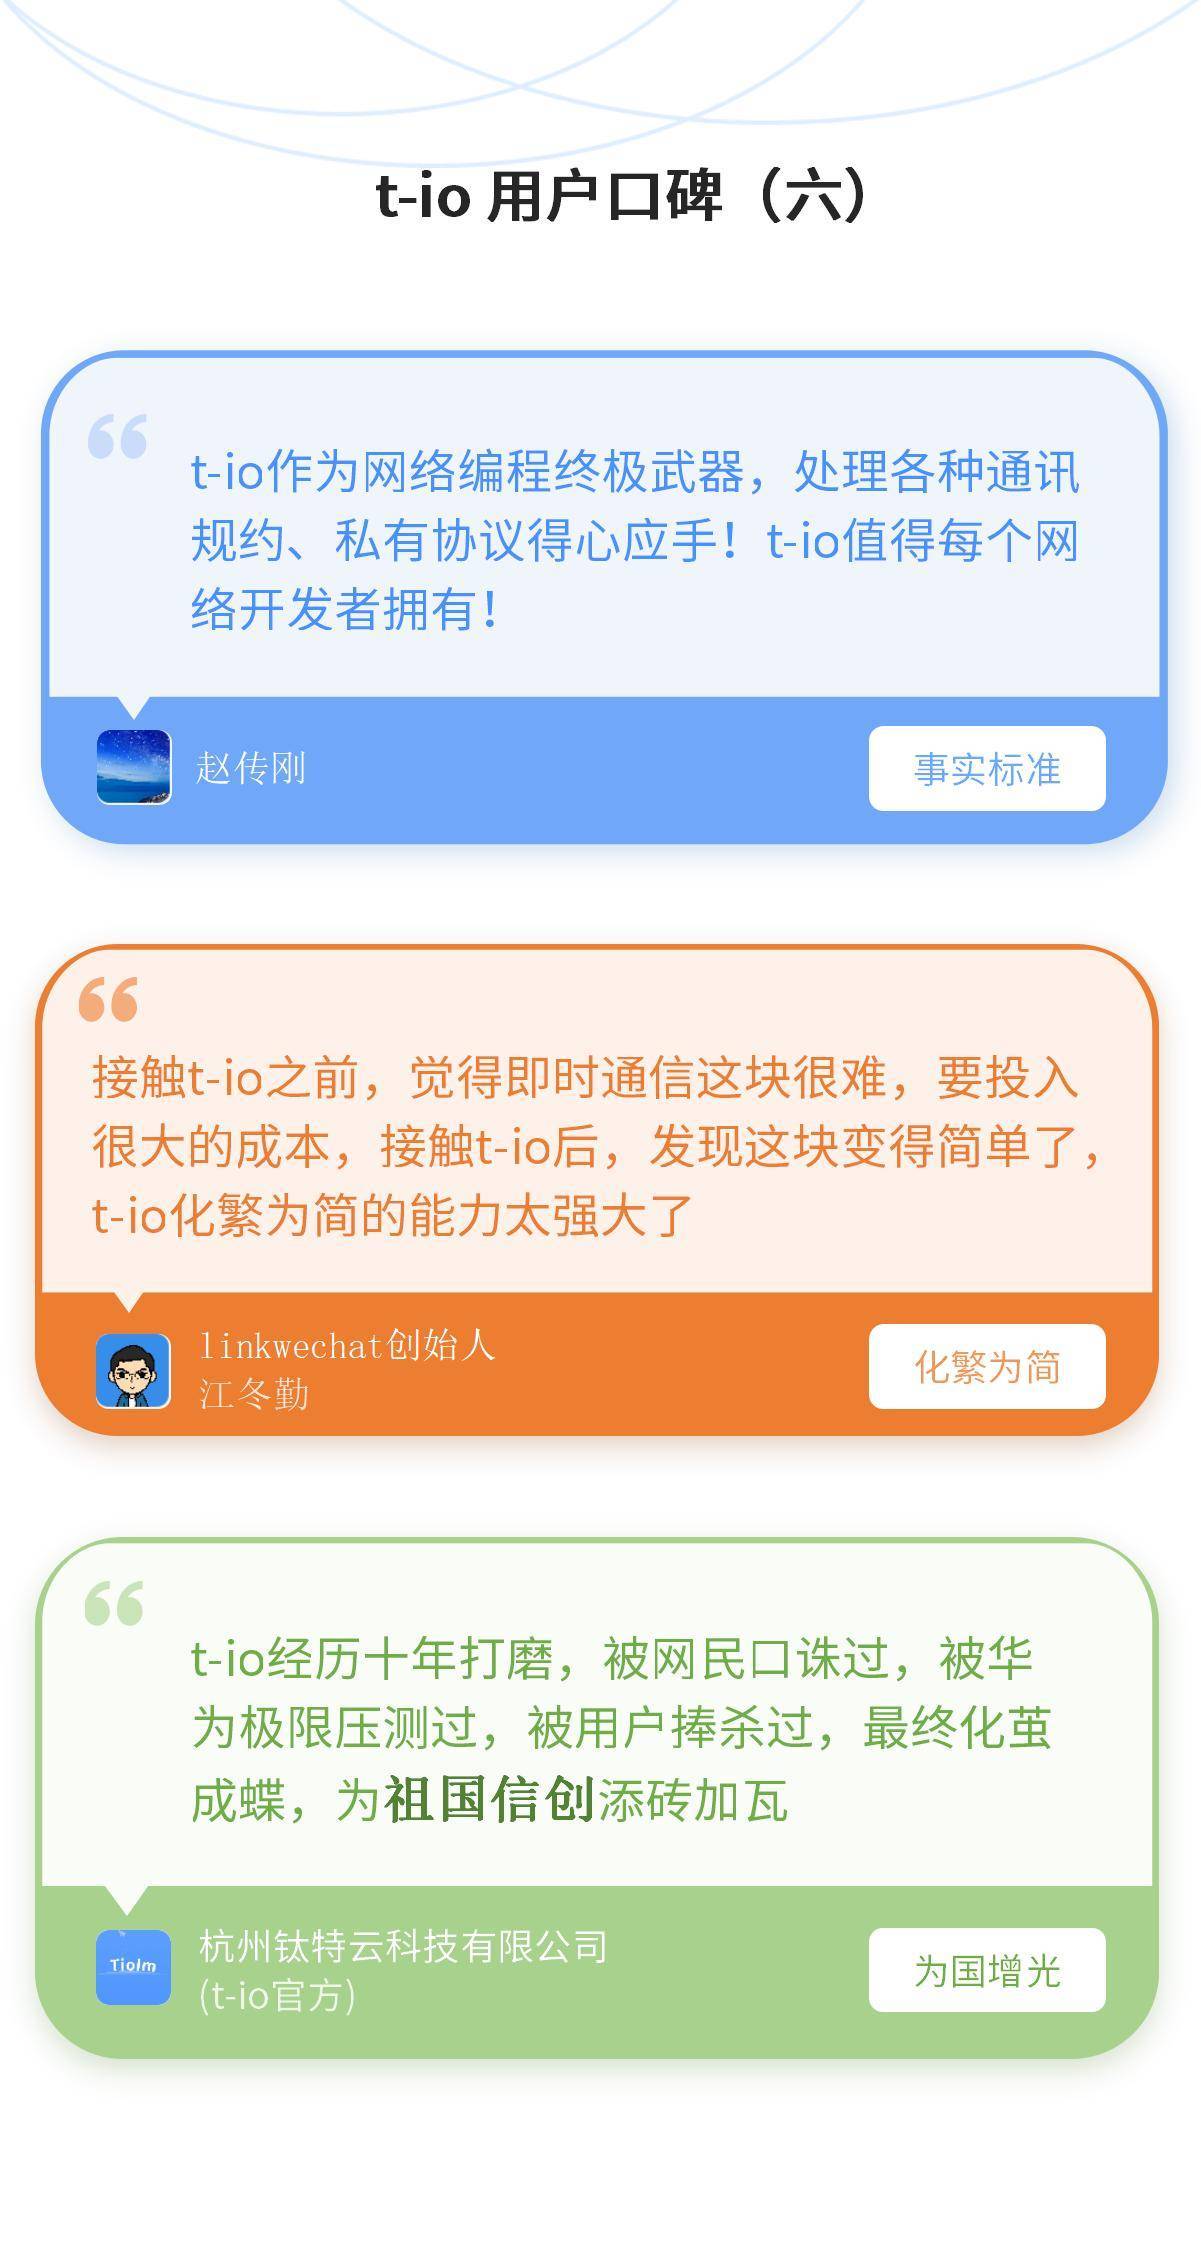 t-io用户口碑(六)